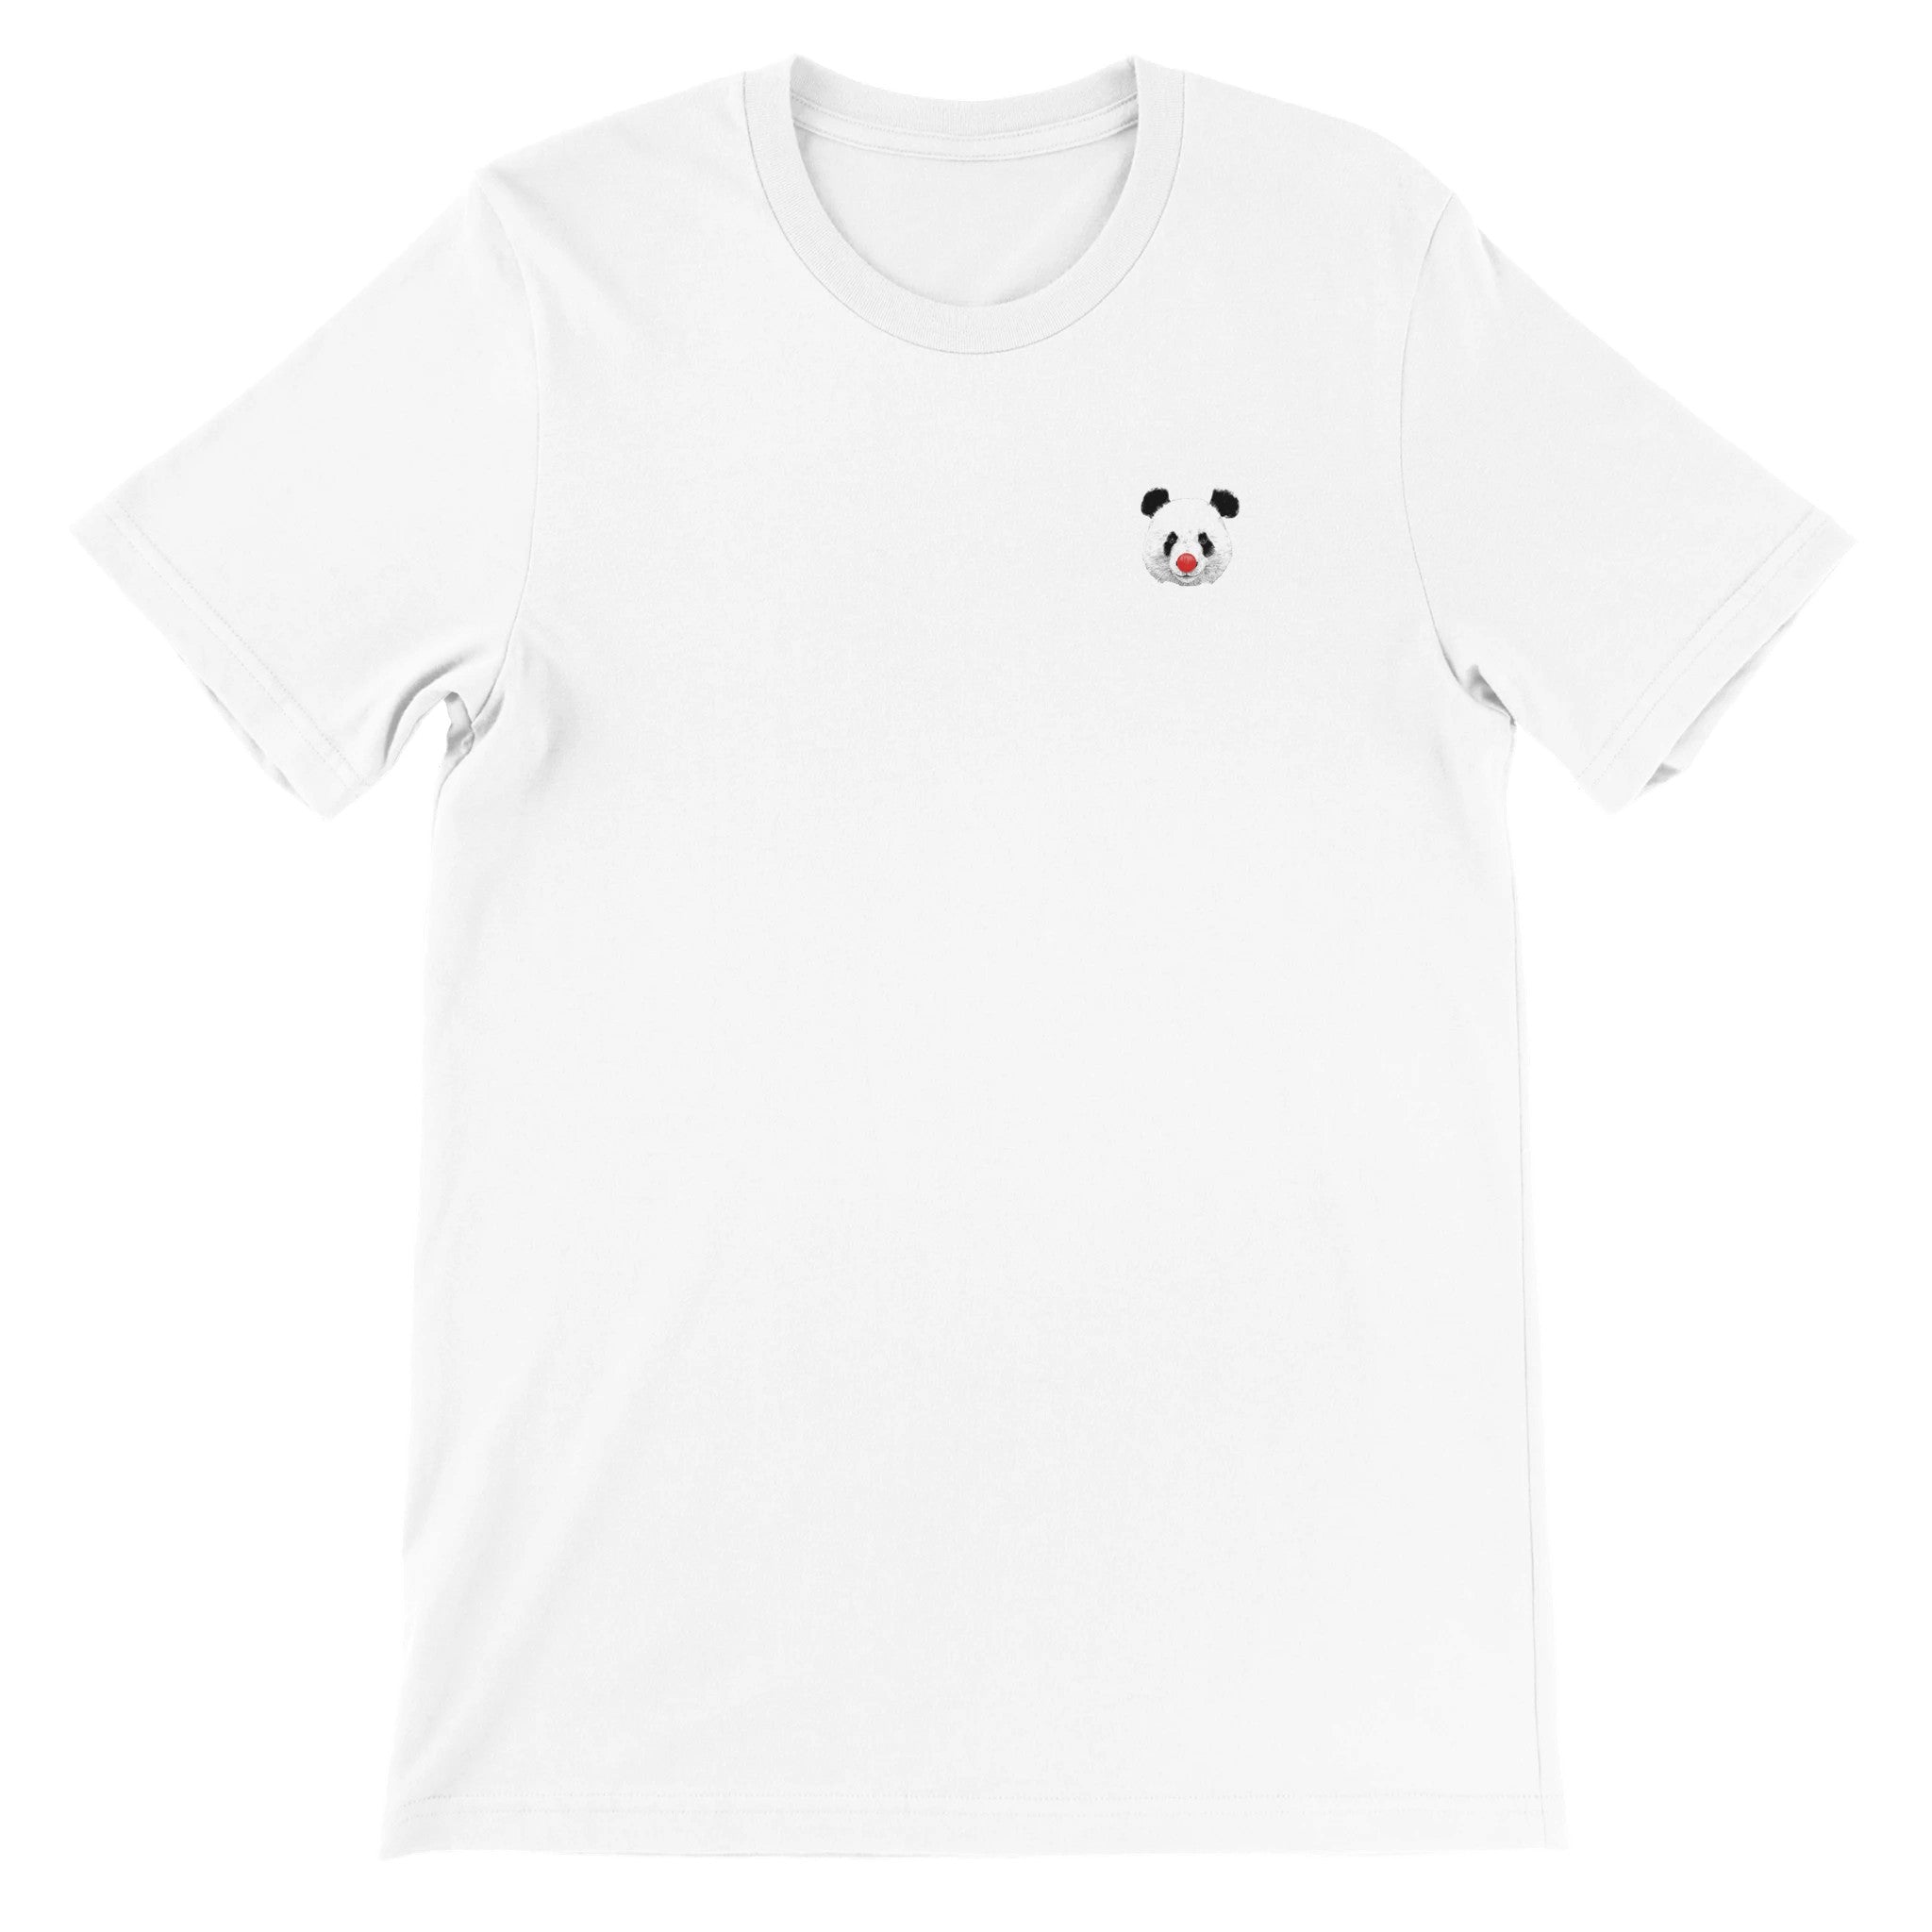 Clown Panda Crewneck T-shirt - Optimalprint